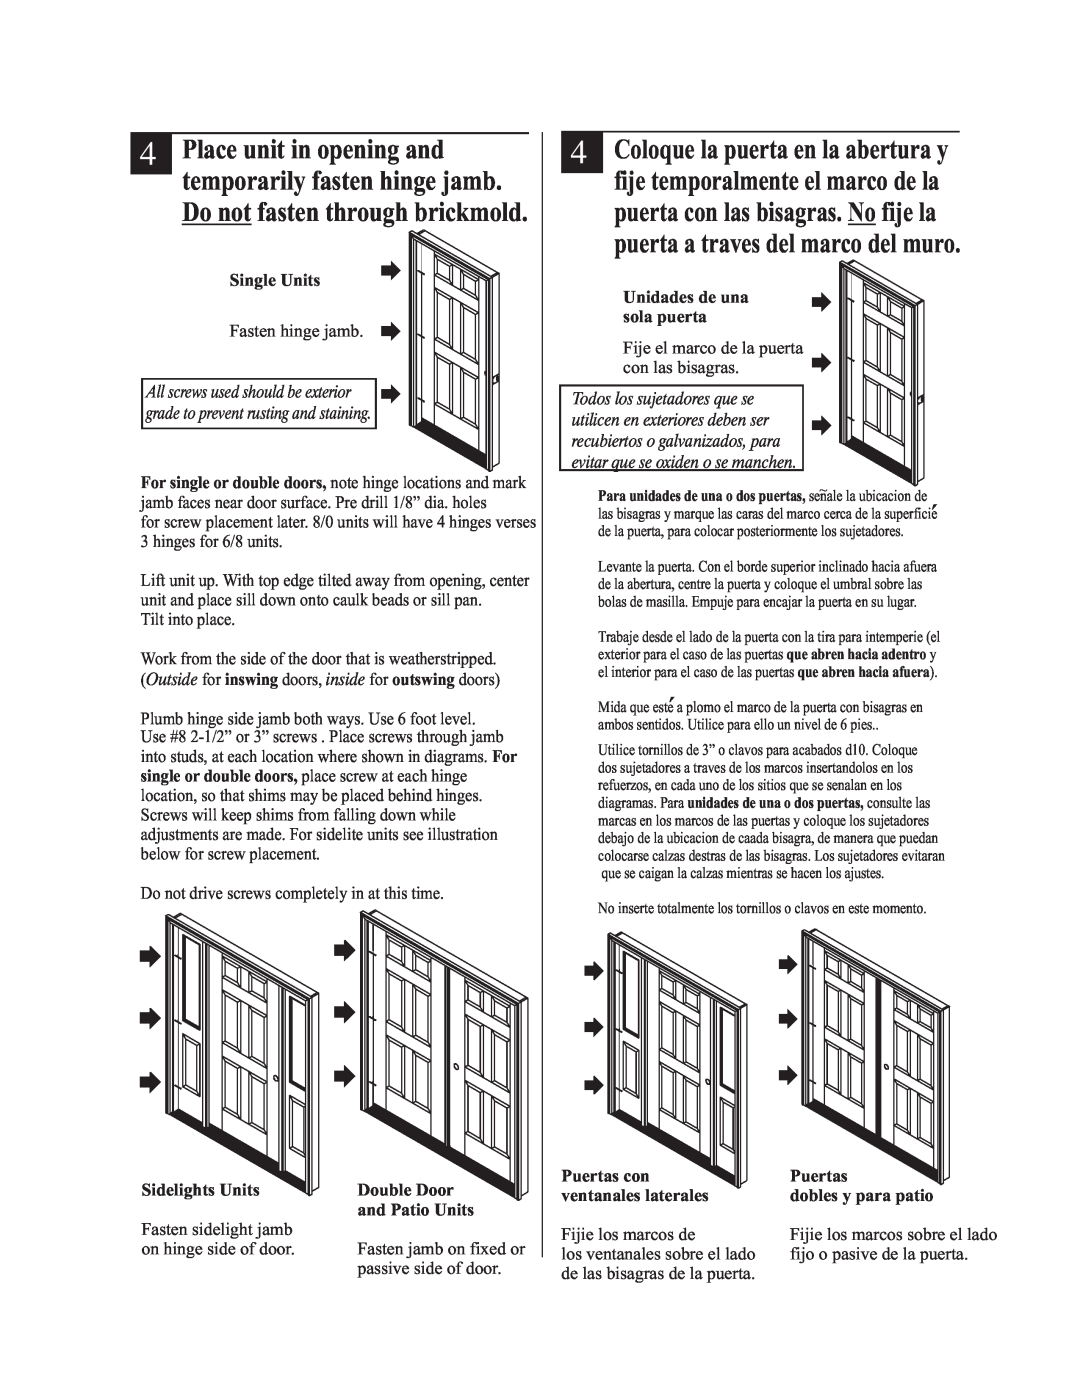 Therma-Tru Pre-hung Door Systems Single Units, Sidelights Units, Double Door, and Patio Units, Unidades de una sola puerta 